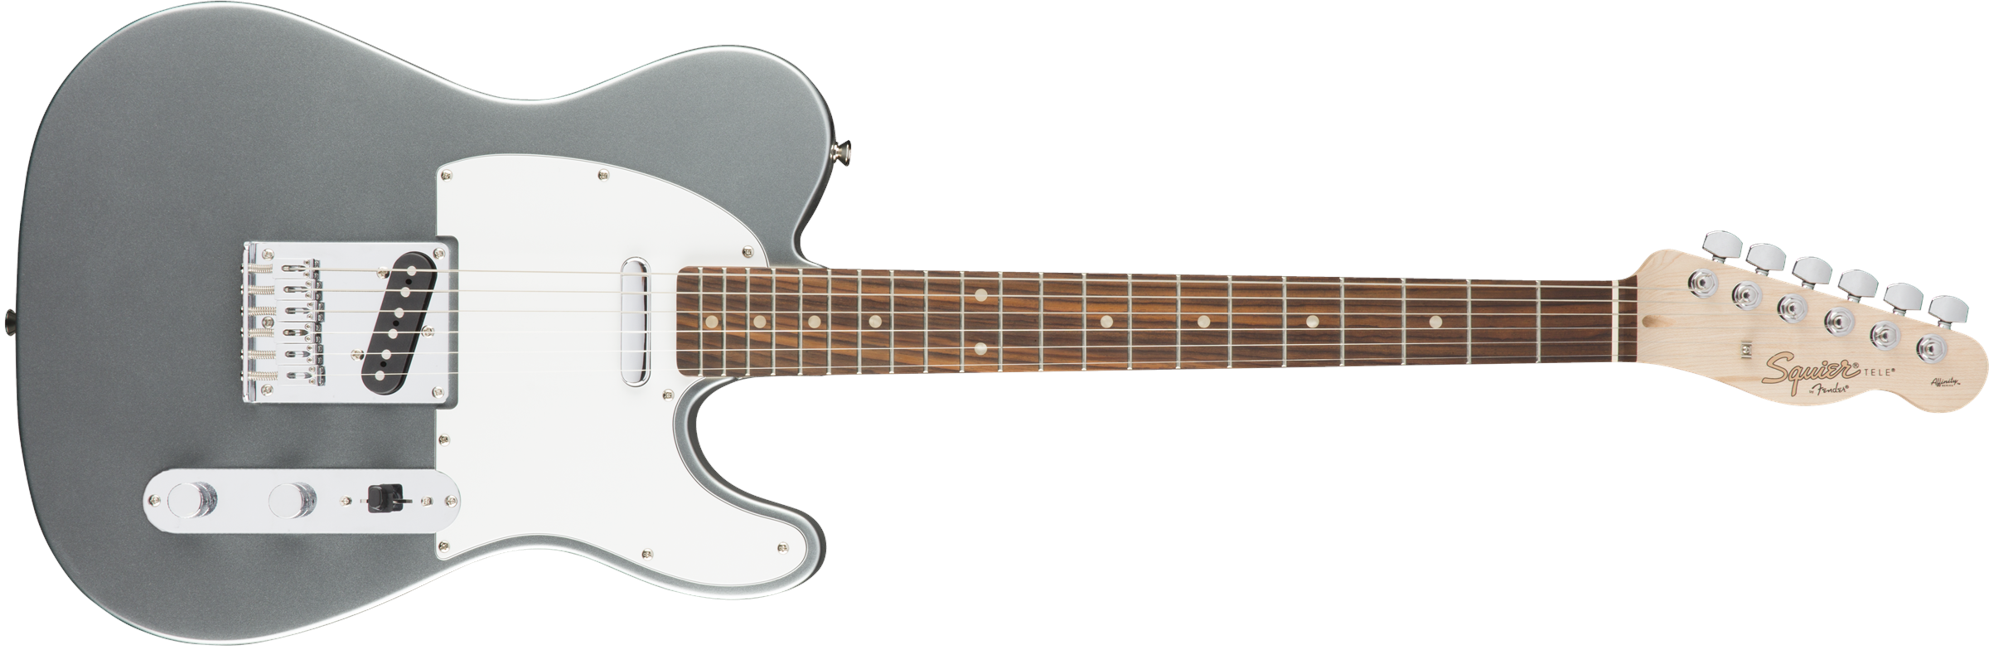 Squier By Fender - Affinity Telecaster - Elektrisk Guitar (Slick Silver)